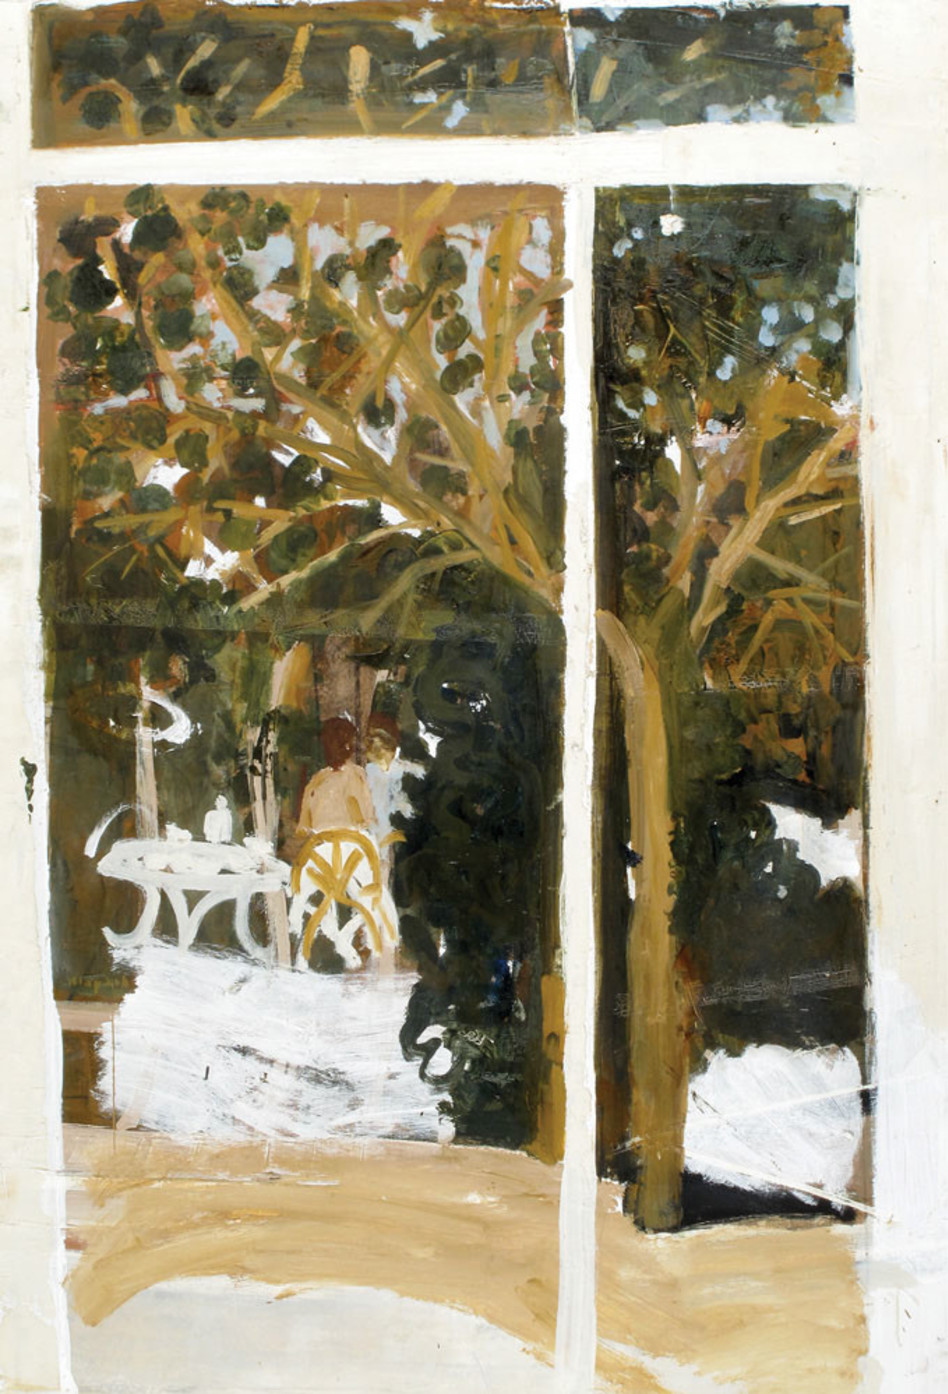 ליליאן קלאפיש, "בגינה", 1980, מקור: אוסף גבי ועמי בראון.